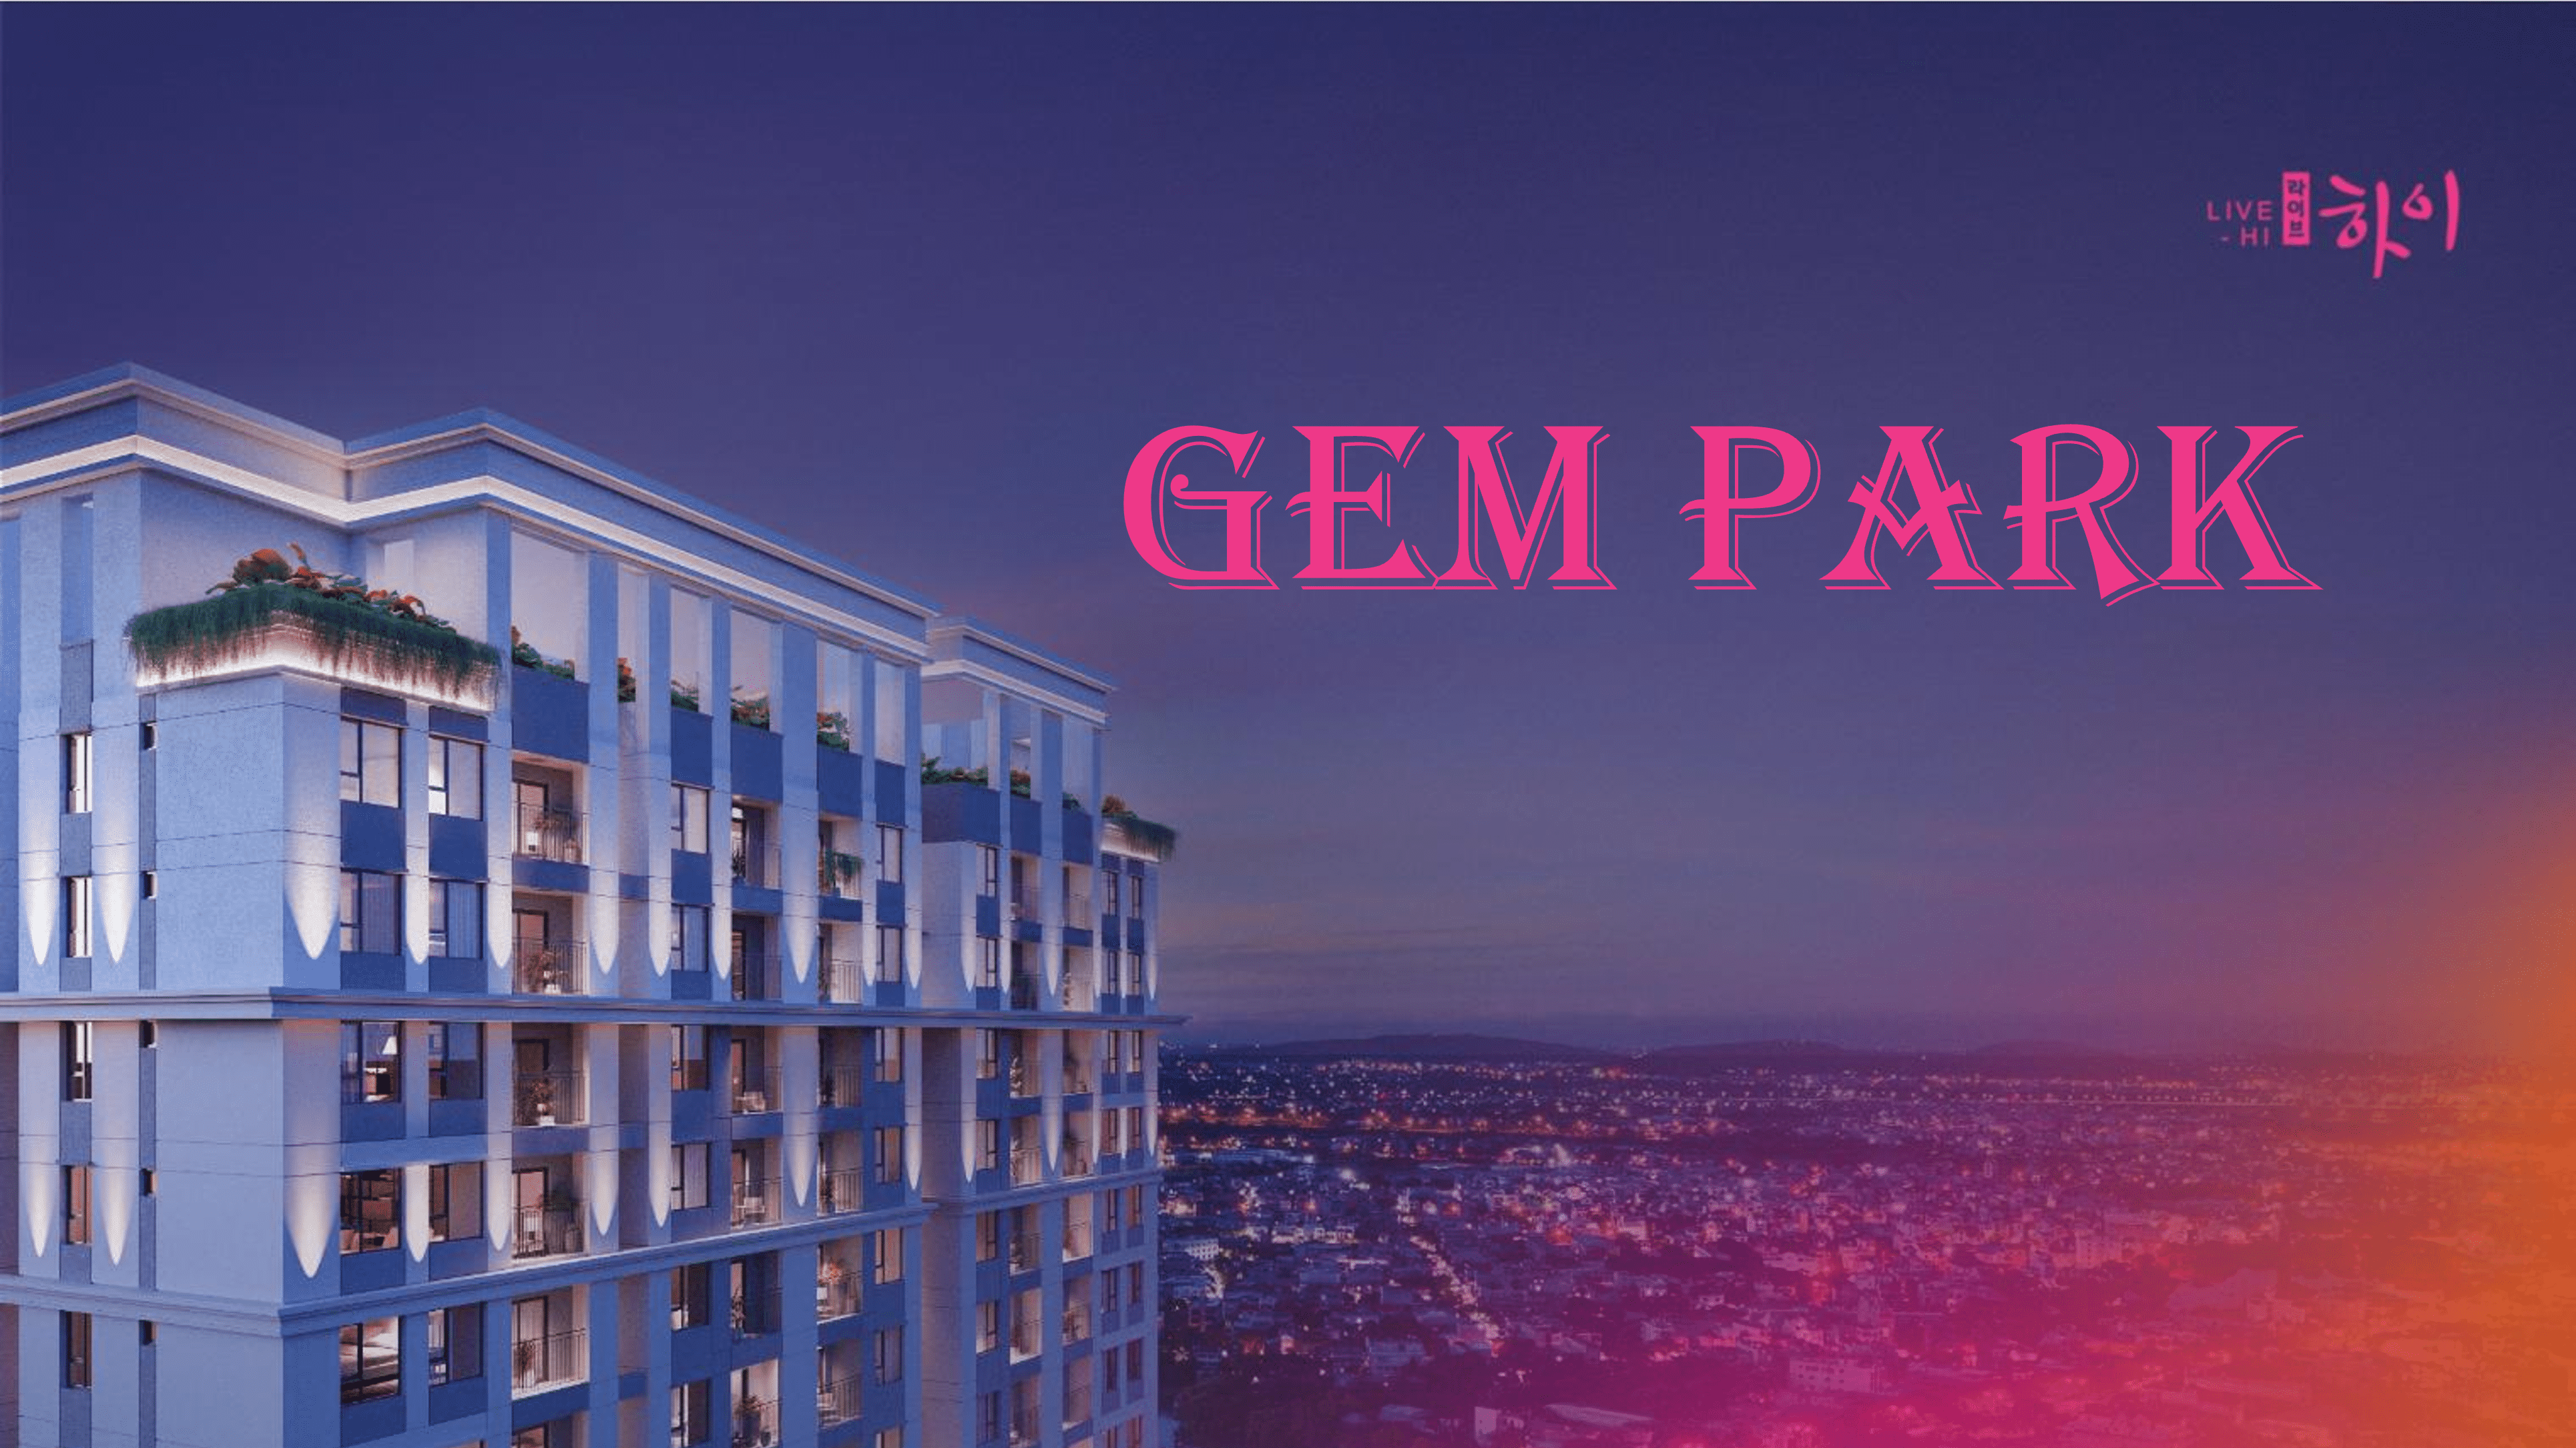 Gem Park